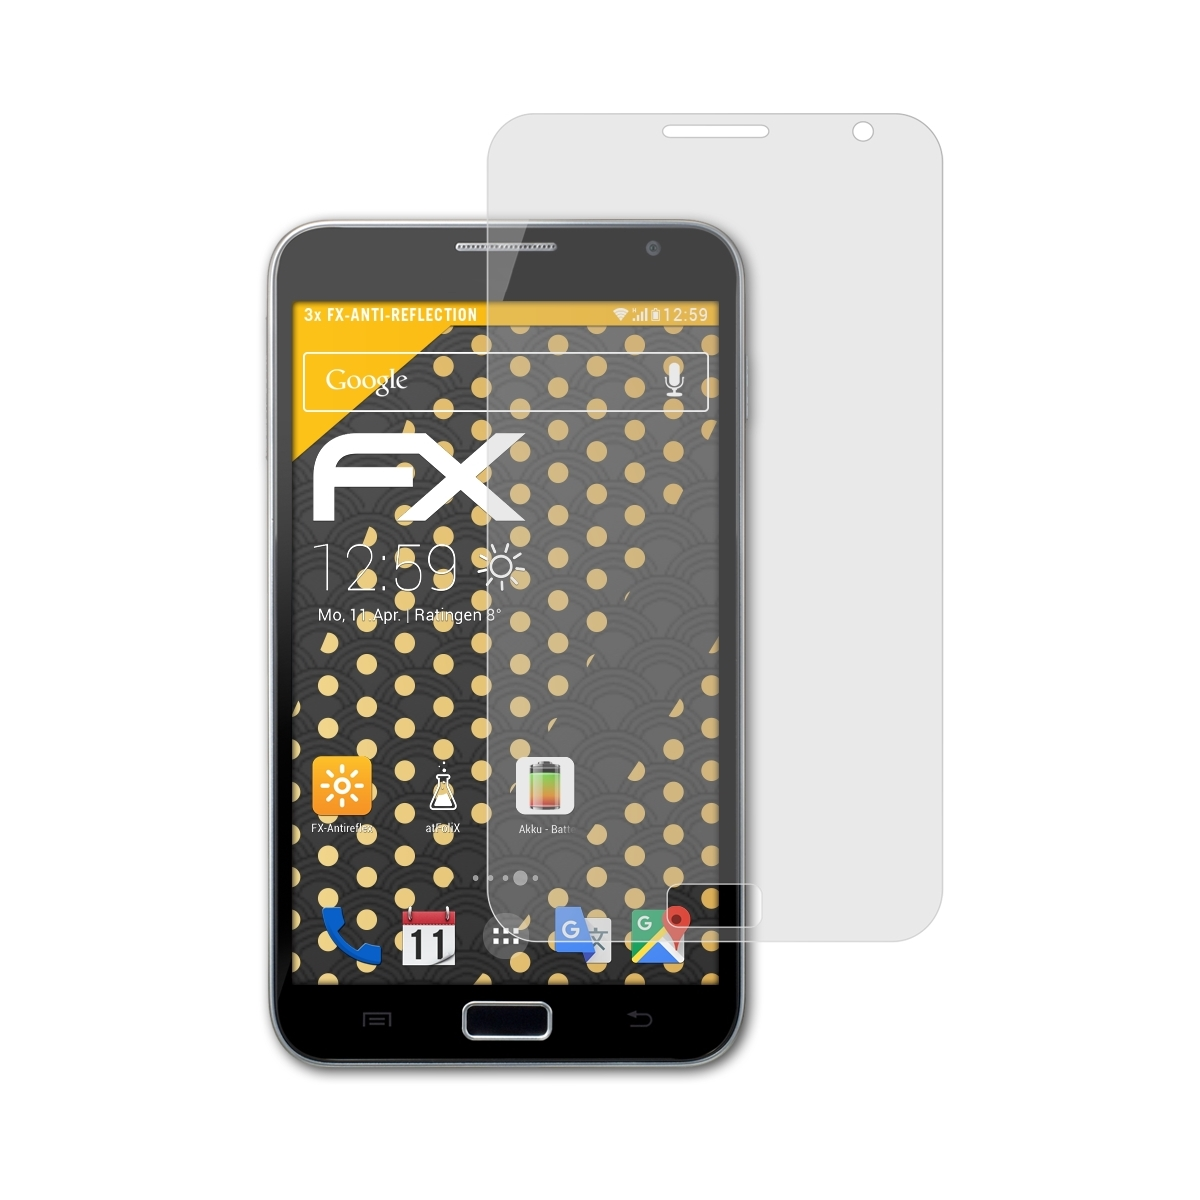 Note FX-Antireflex (GT-N7000)) Displayschutz(für ATFOLIX Galaxy Samsung 3x